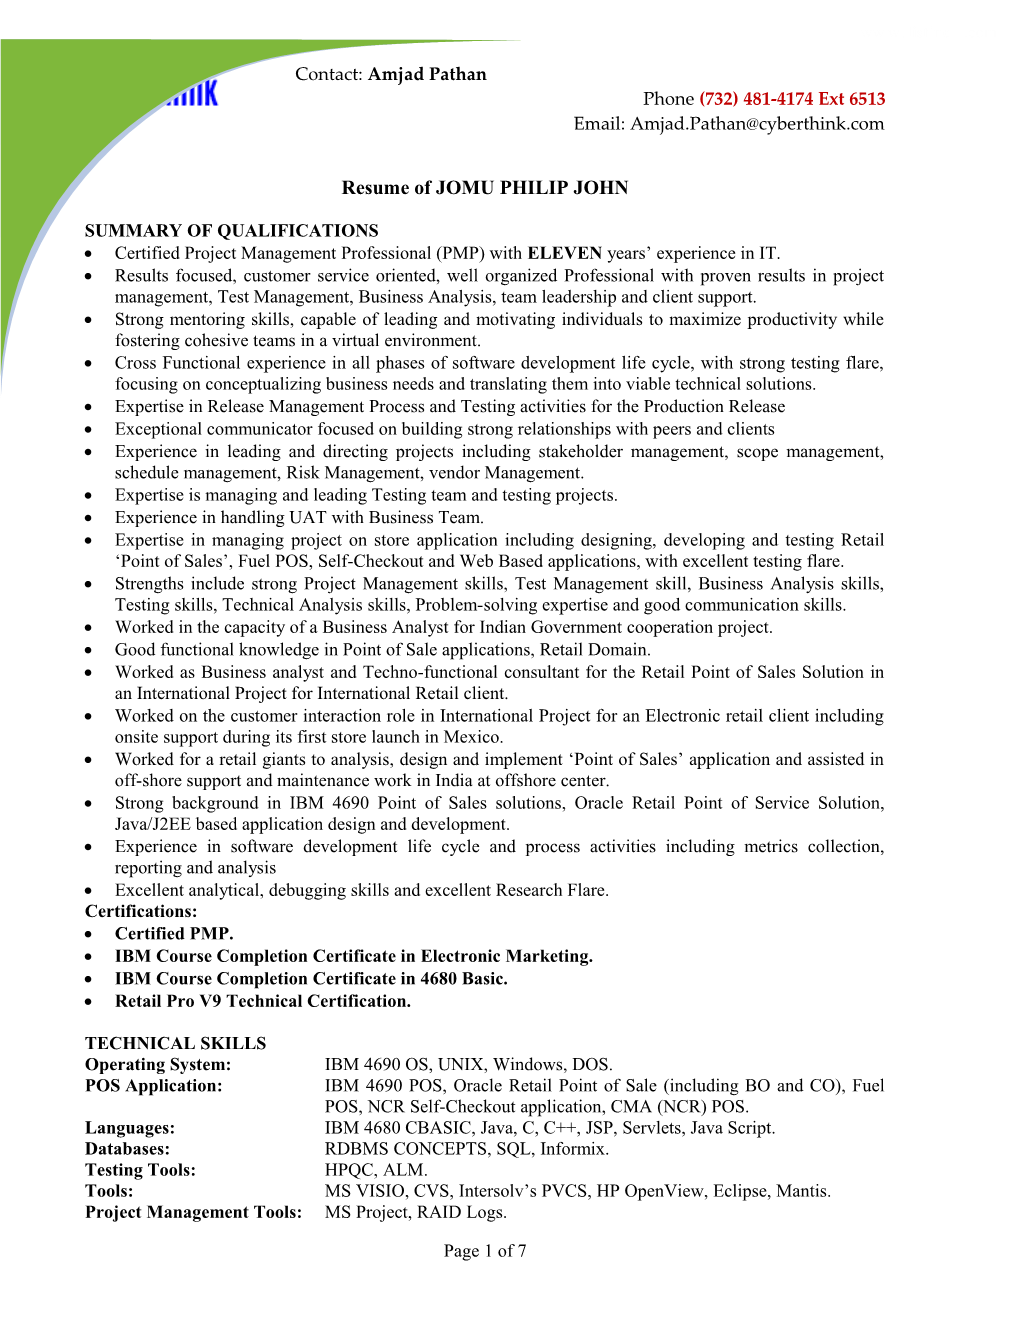 Resume of JOMU PHILIP JOHN